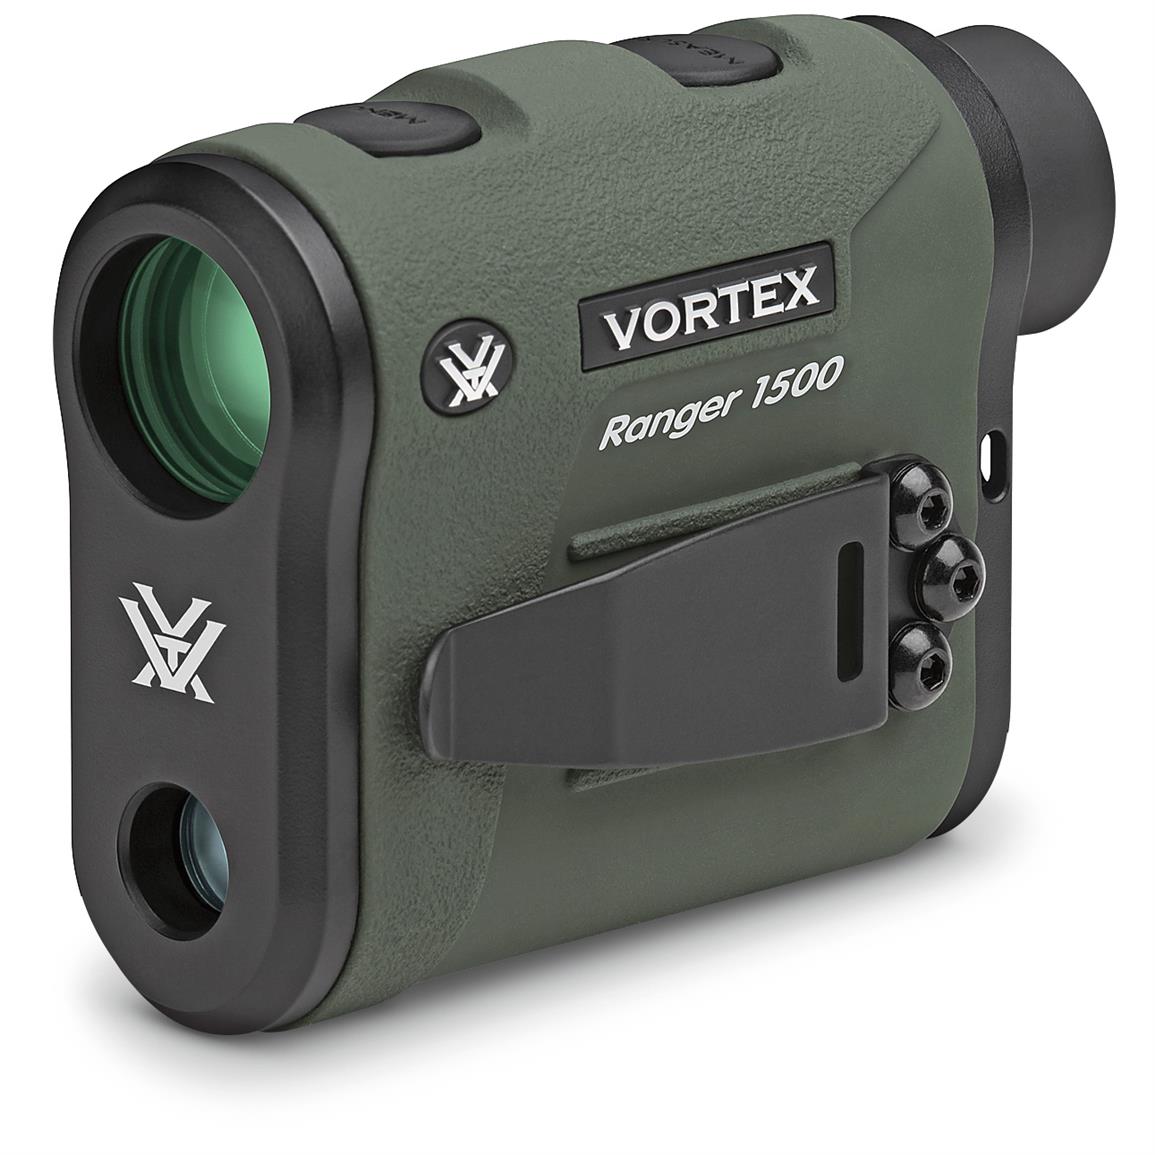 Vortex Ranger 1500 Rangefinder - 666485, Rangefinders at Sportsman's Guide